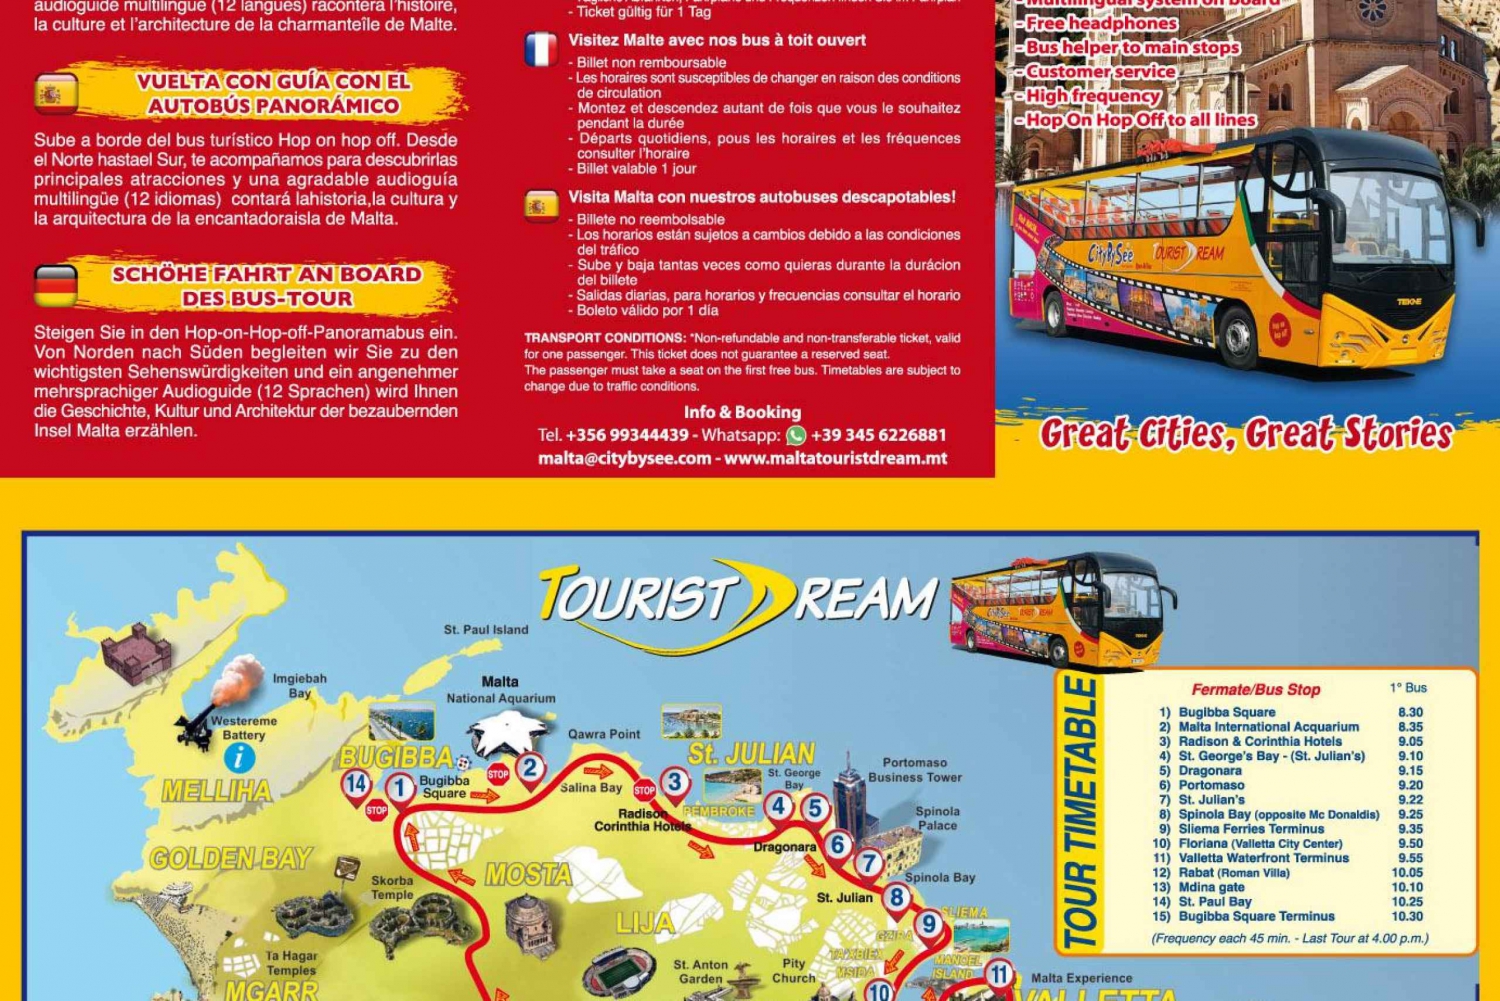 Sinta e explore Malta: Tour de ônibus hop-on hop-off Tour Tourist Dream